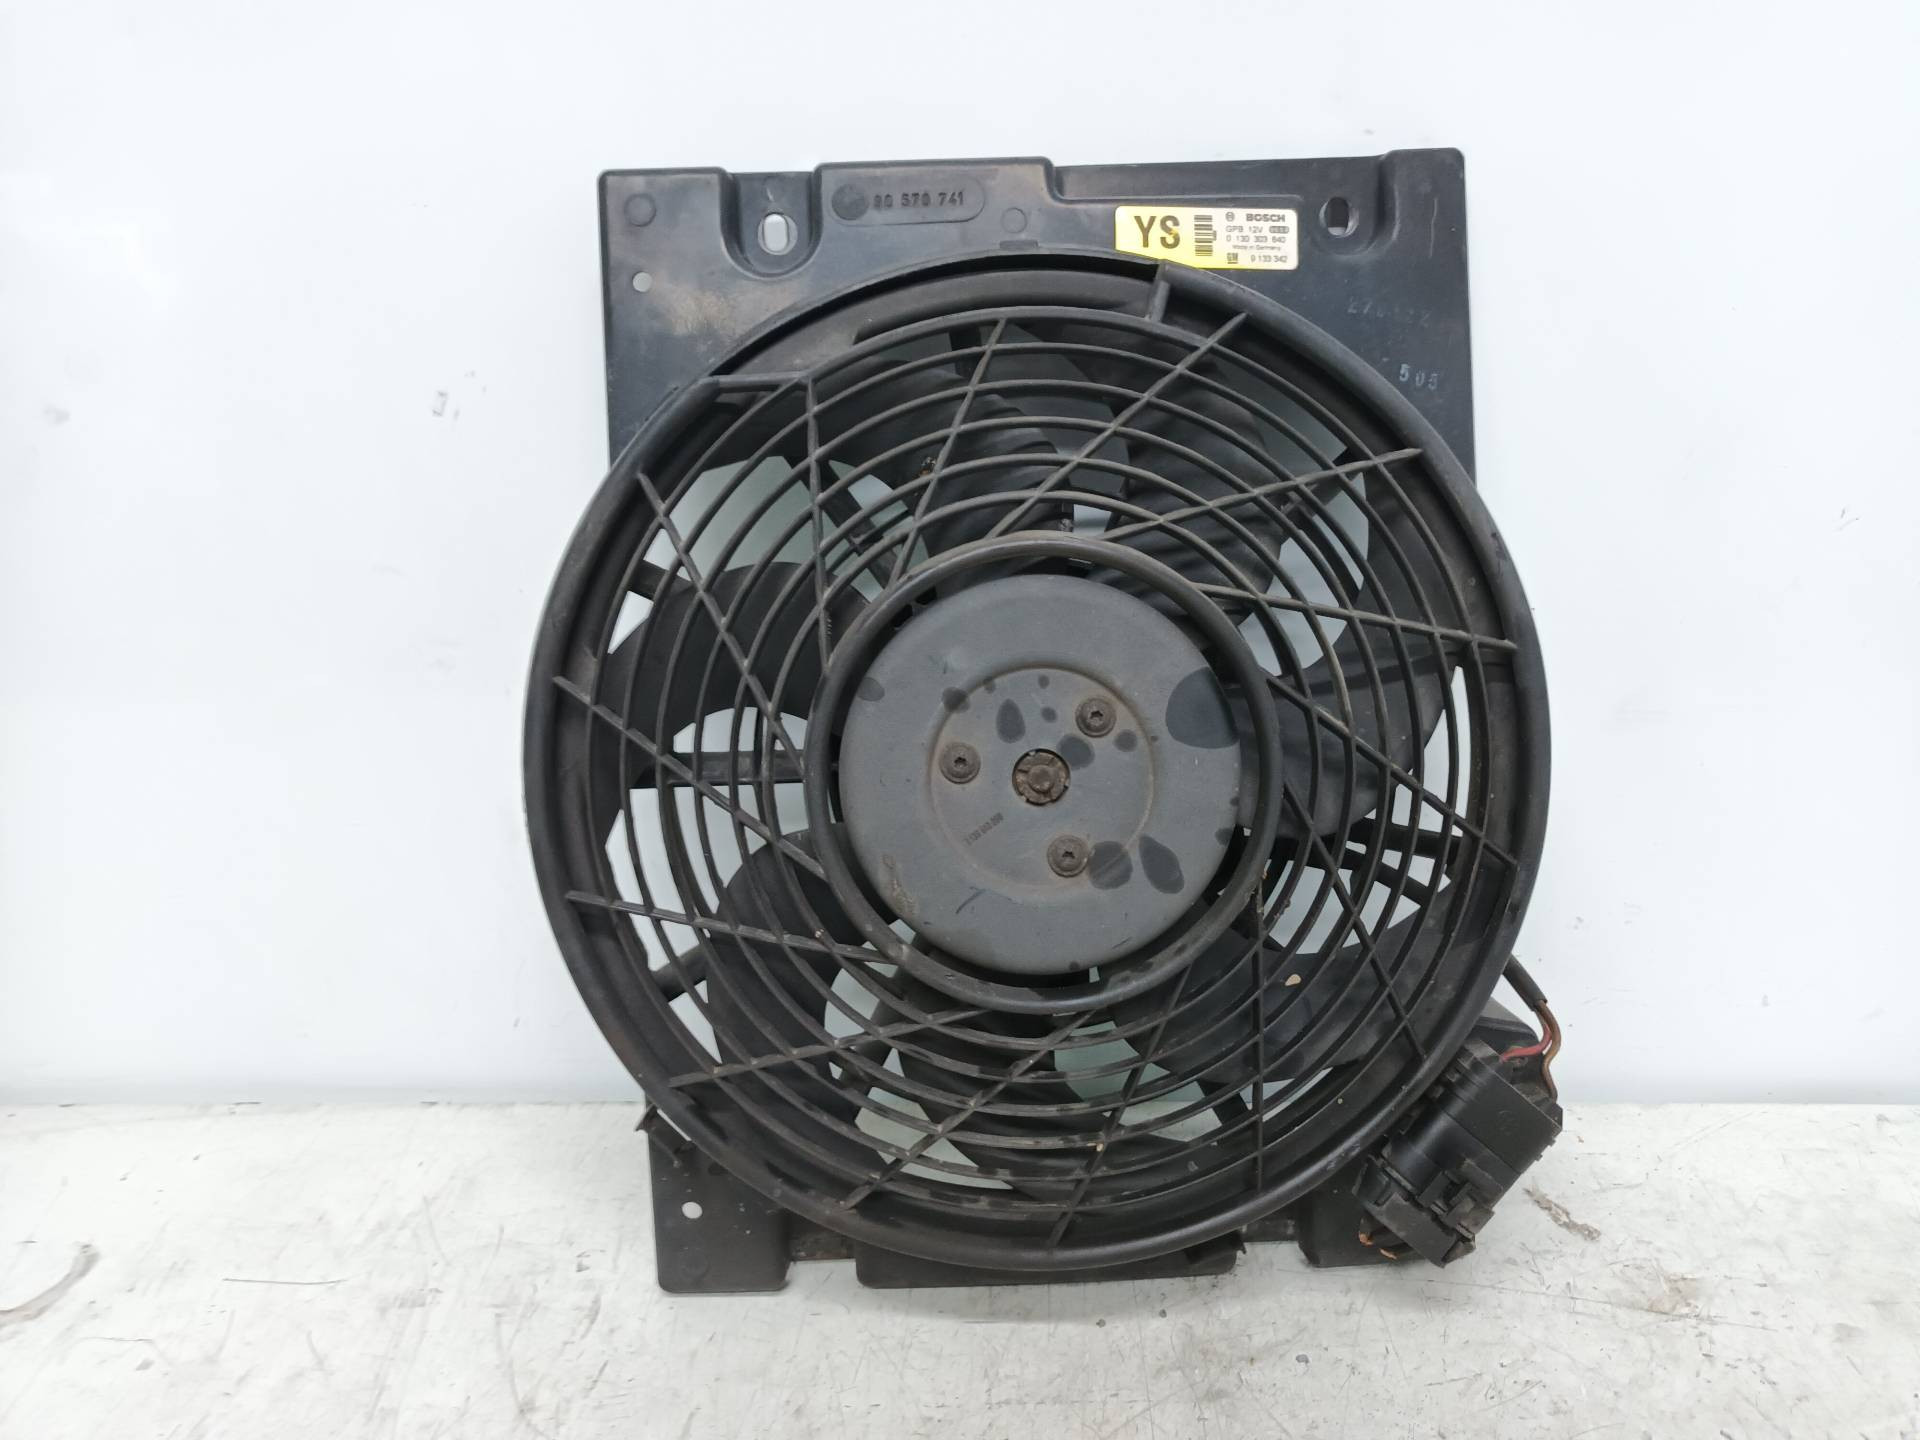 OPEL Corsa B (1993-2000) Diffuser Fan 9133342 20085152